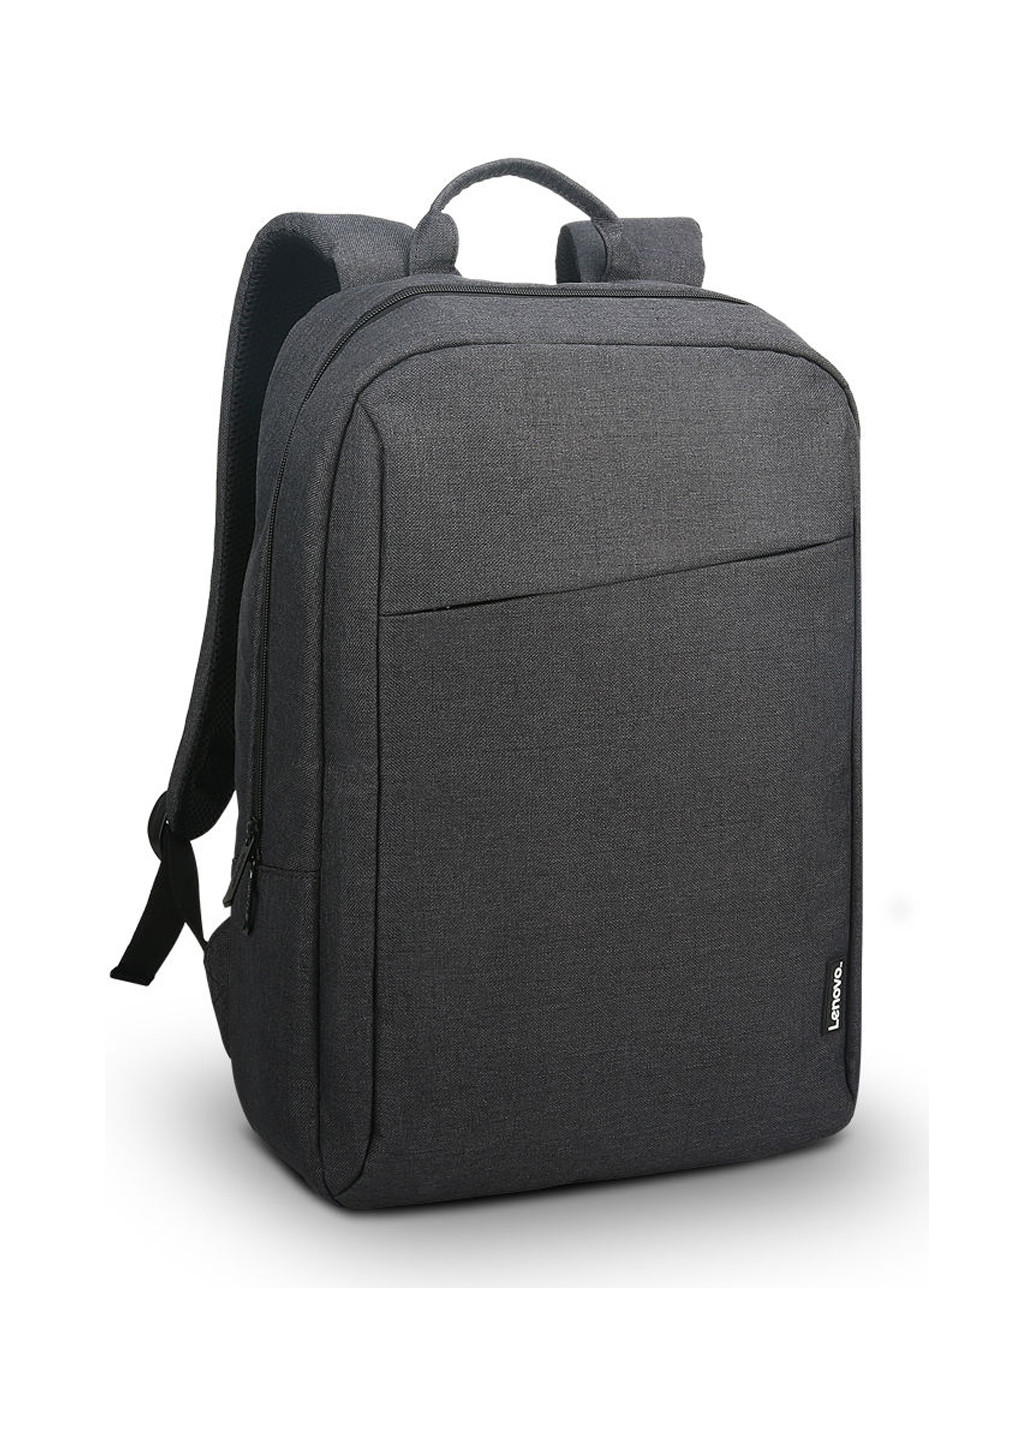 Рюкзак Casual B210 для ноутбука 15,6" чорний (GX40Q17225) Lenovo backpack b210 casual 15.6" black (gx40q17225) (137227684)